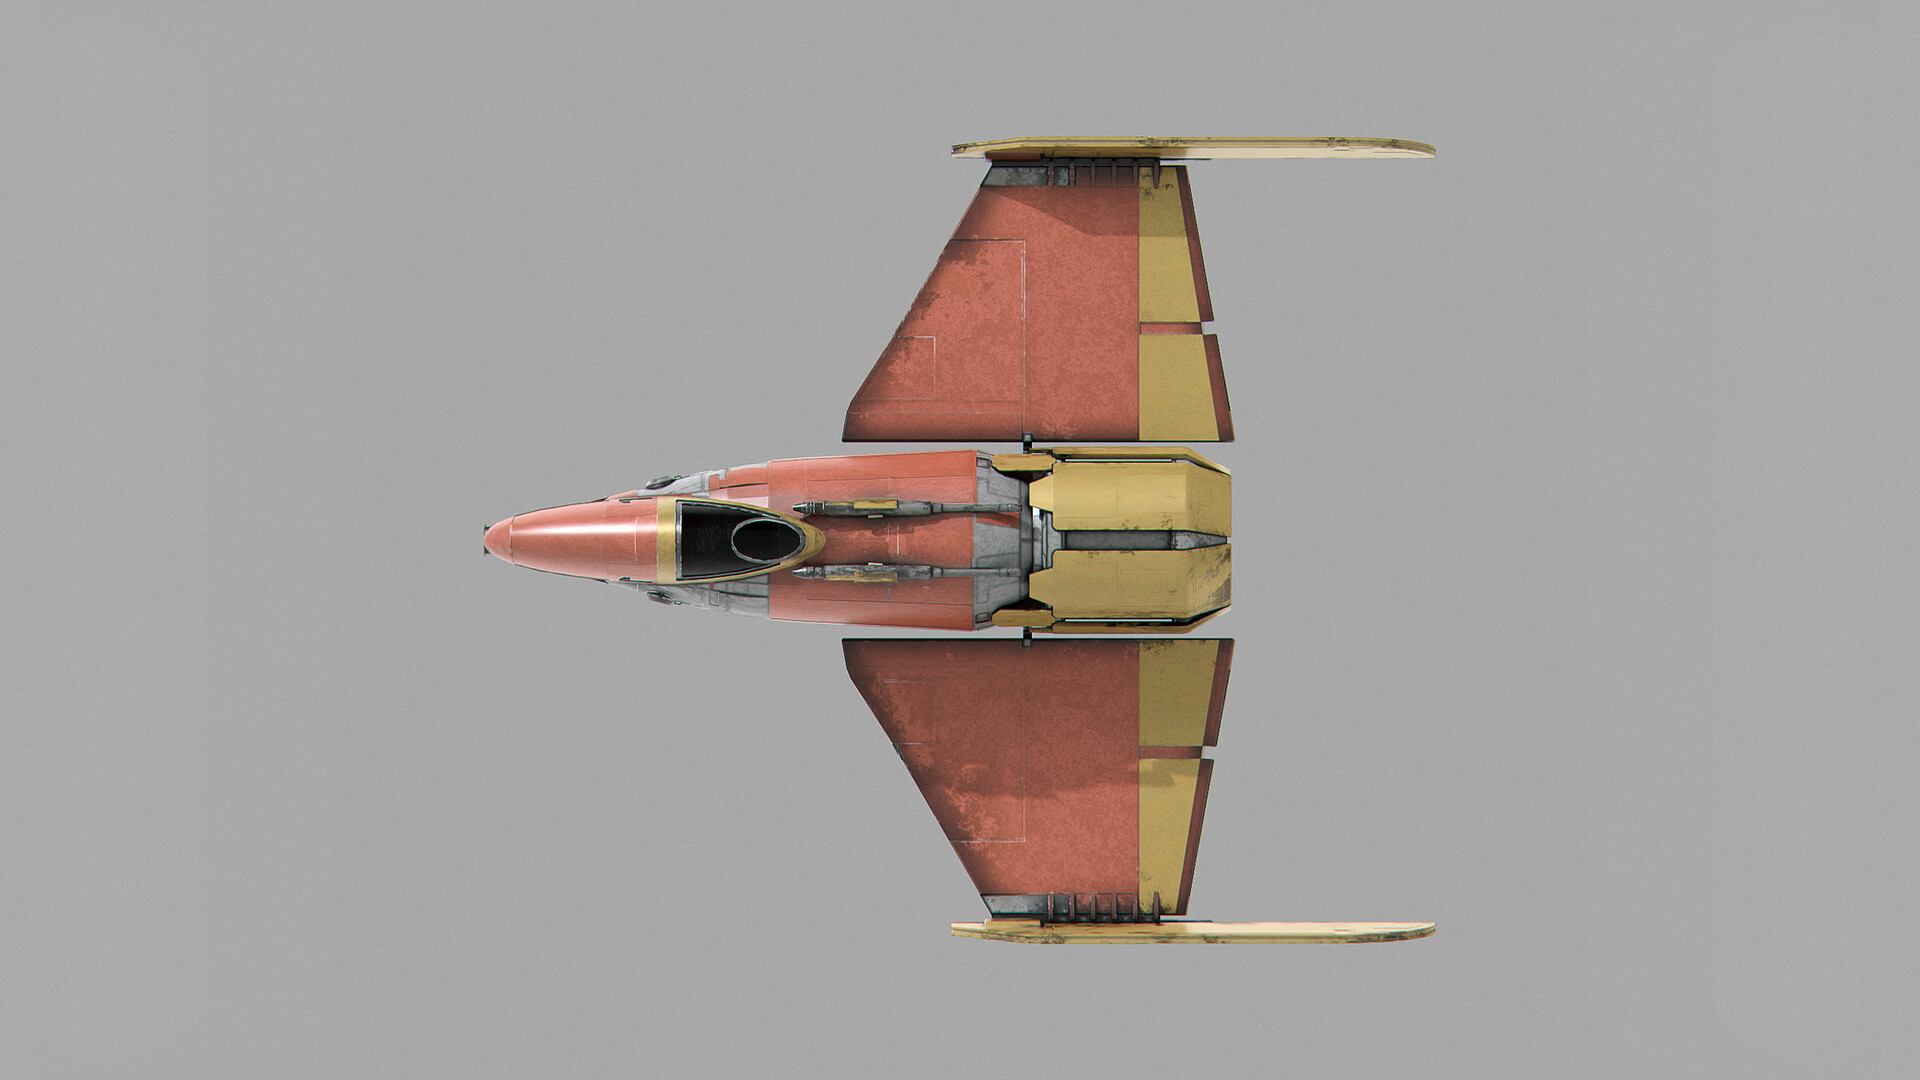 Digital Shipyard - Shin Hati's Starfighter - Star Wars Ahsoka